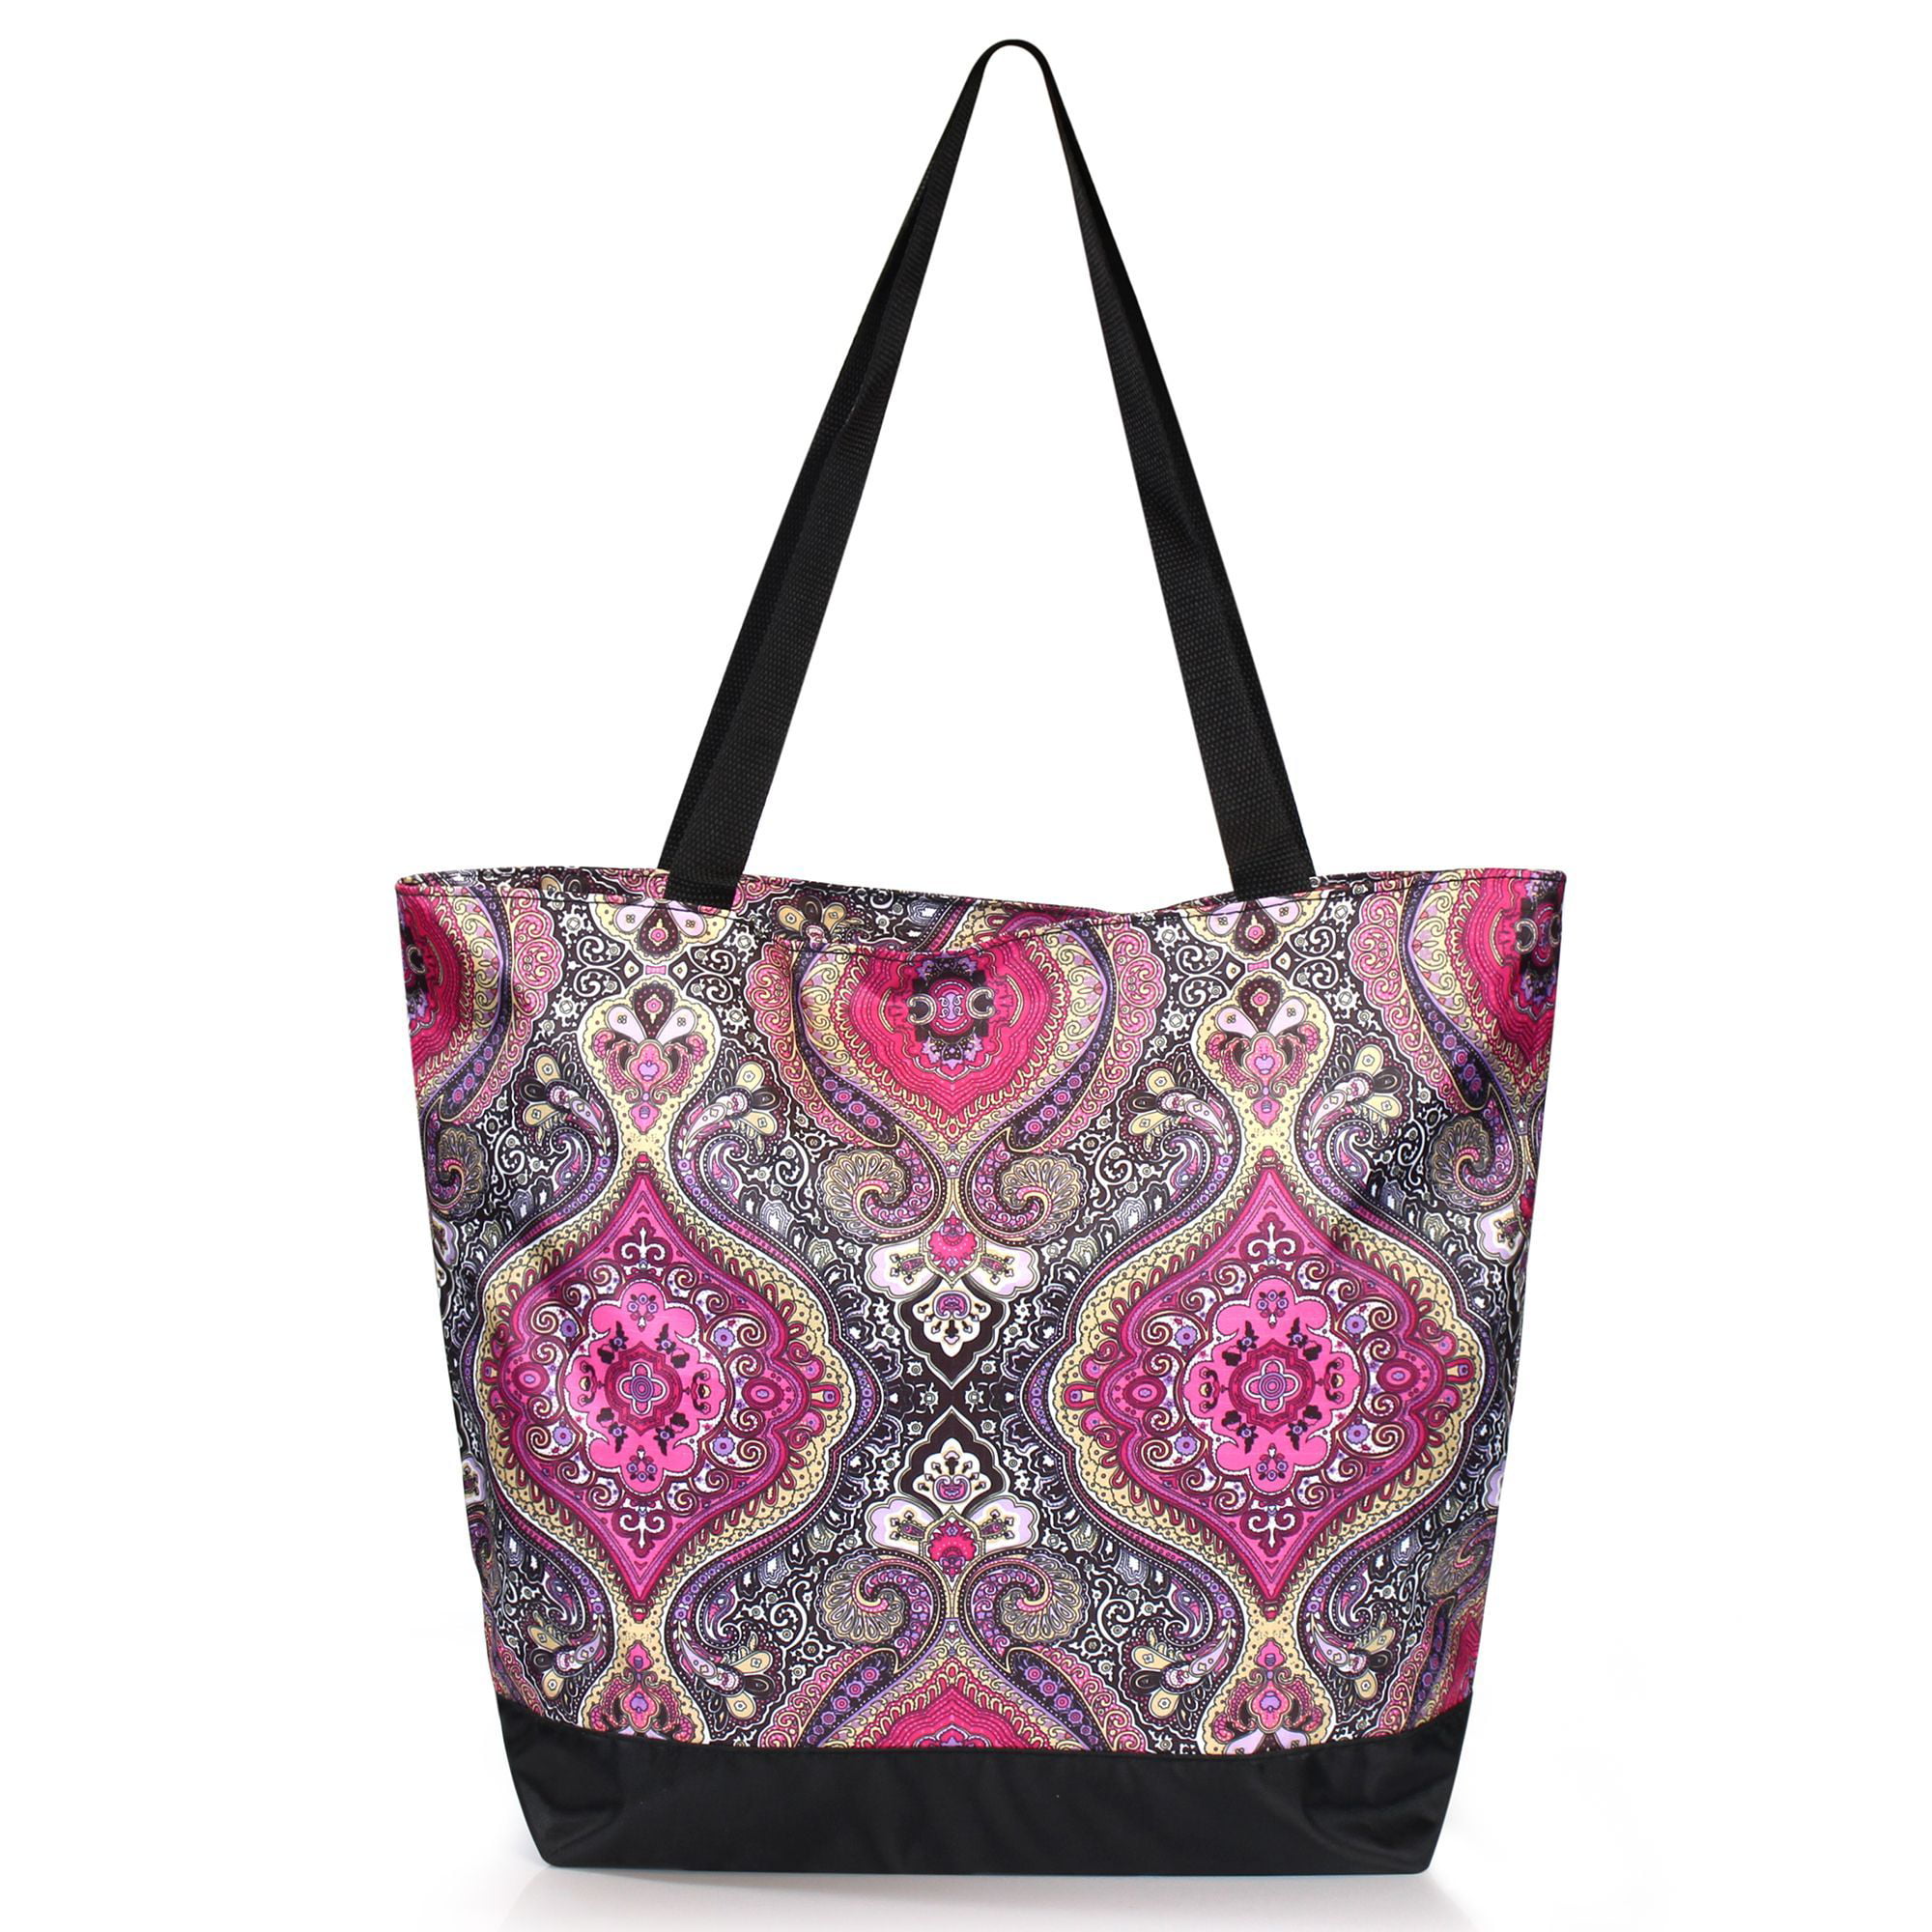 Zodaca Lightweight Zip Closure Handbag Tote Carry Bag for Shopping ...